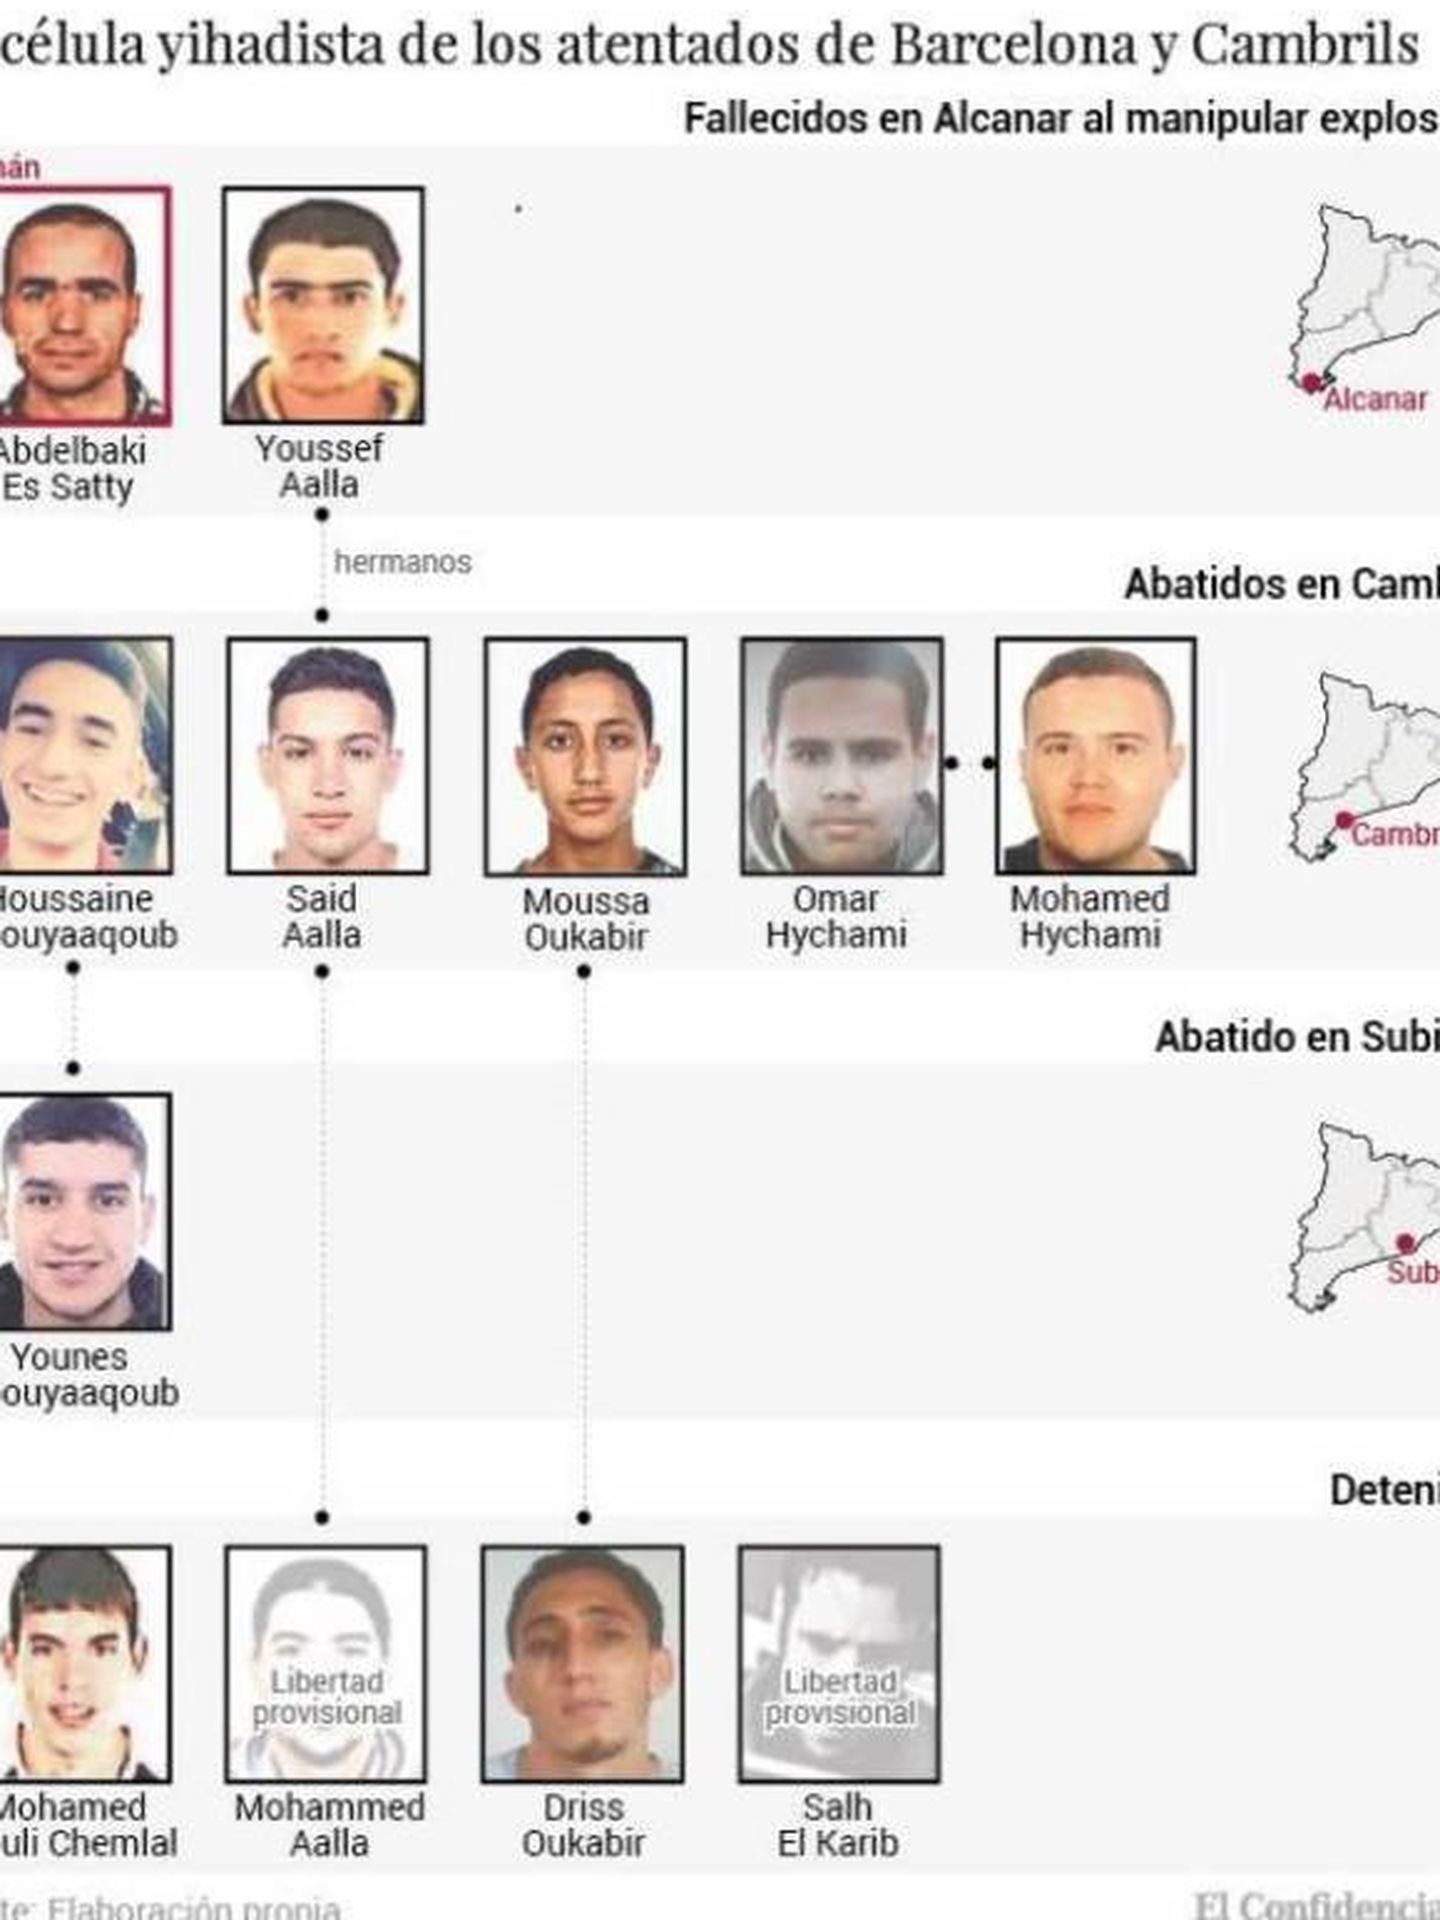 La célula yihadistas de los atentados de Barcelona y Cambrills 